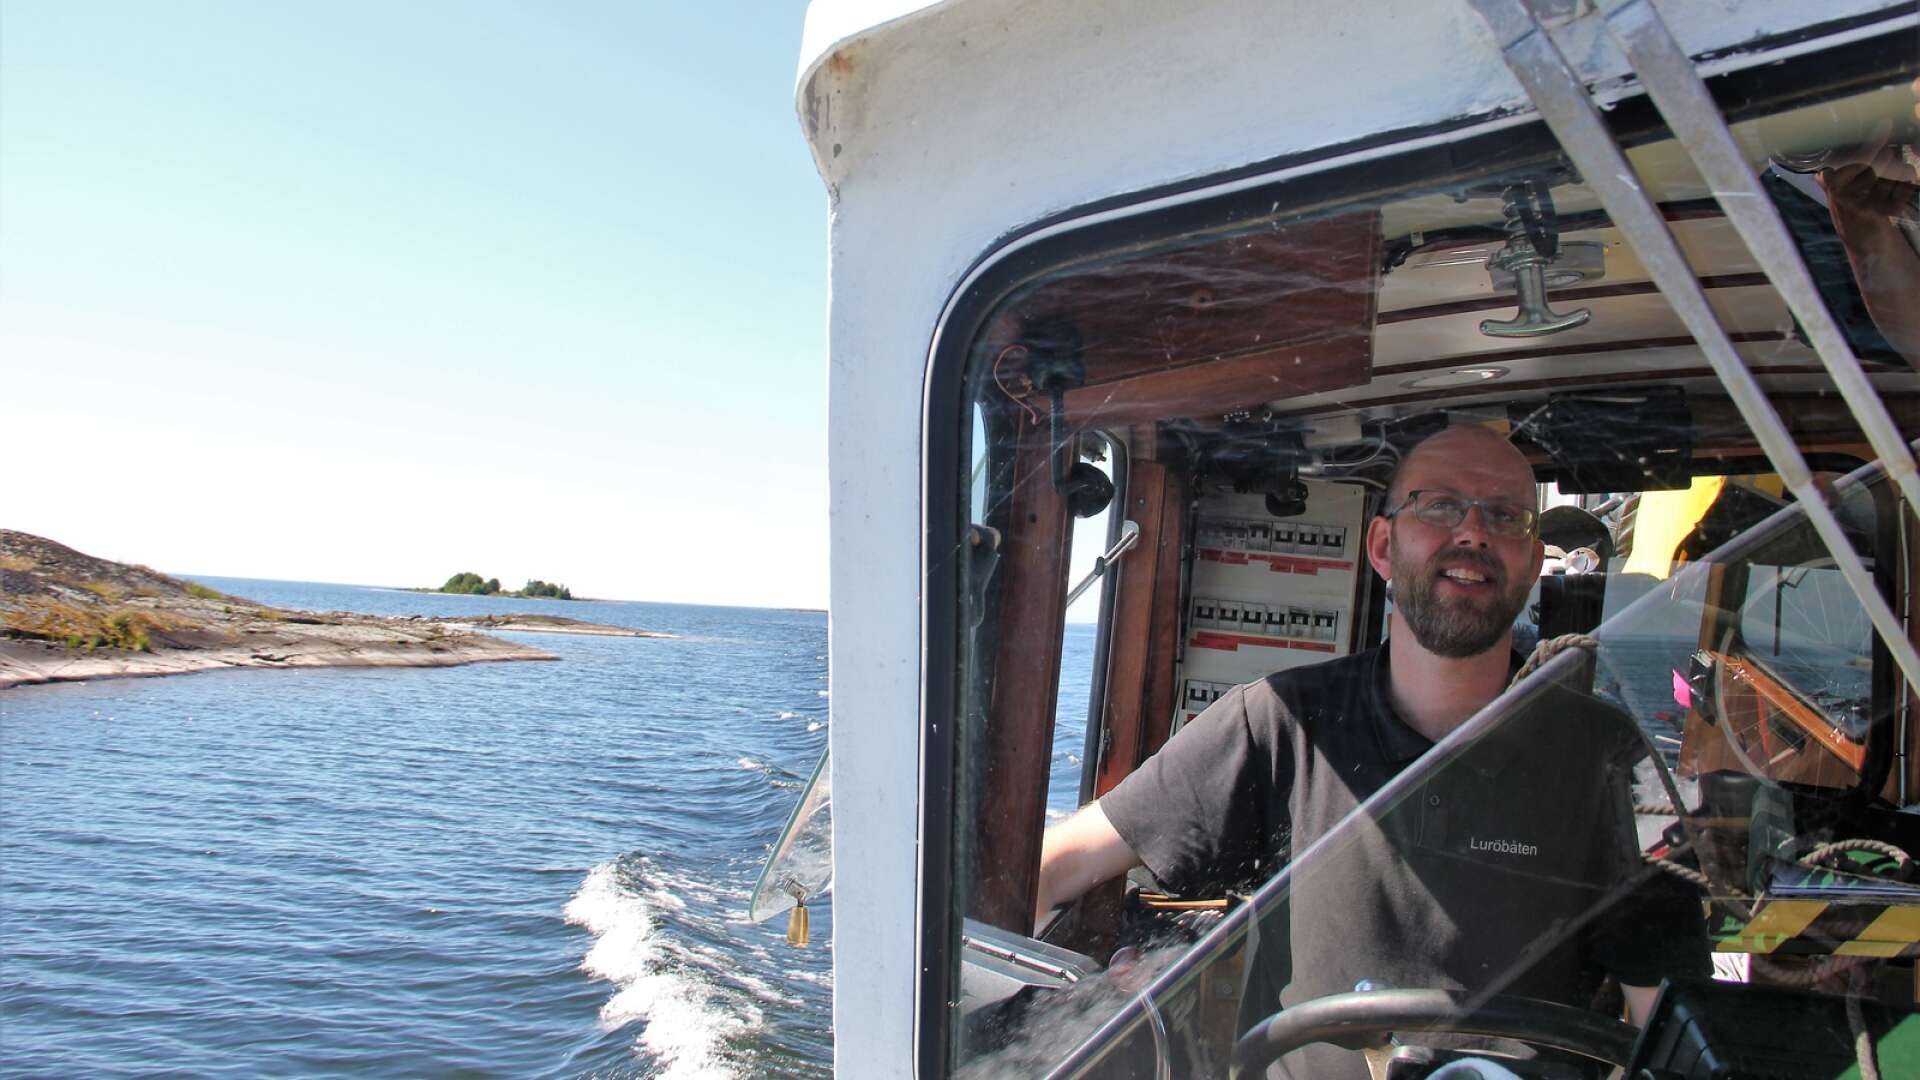 Familjen Örnvald driver Luröbåten och Luröbryggan som fixar både transport och mat åt den som besöker Lurö. Björn är sjätte generationens kapten i skärgården.